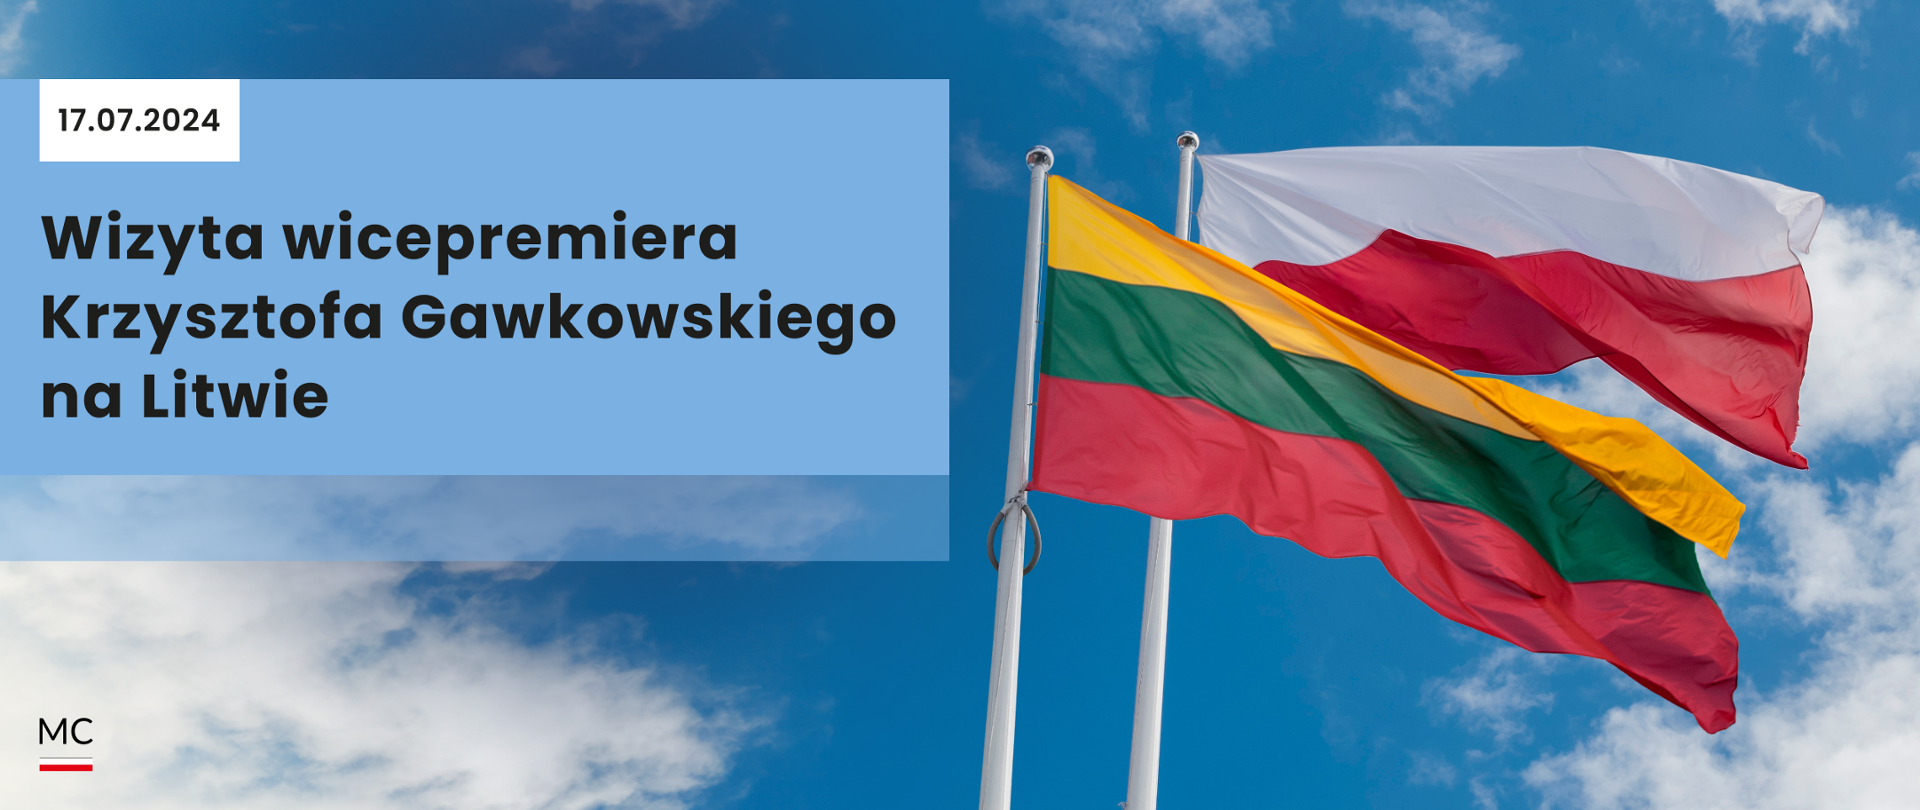 Wizyta wicepremiera Krzysztofa Gawkowskiego na Litwie